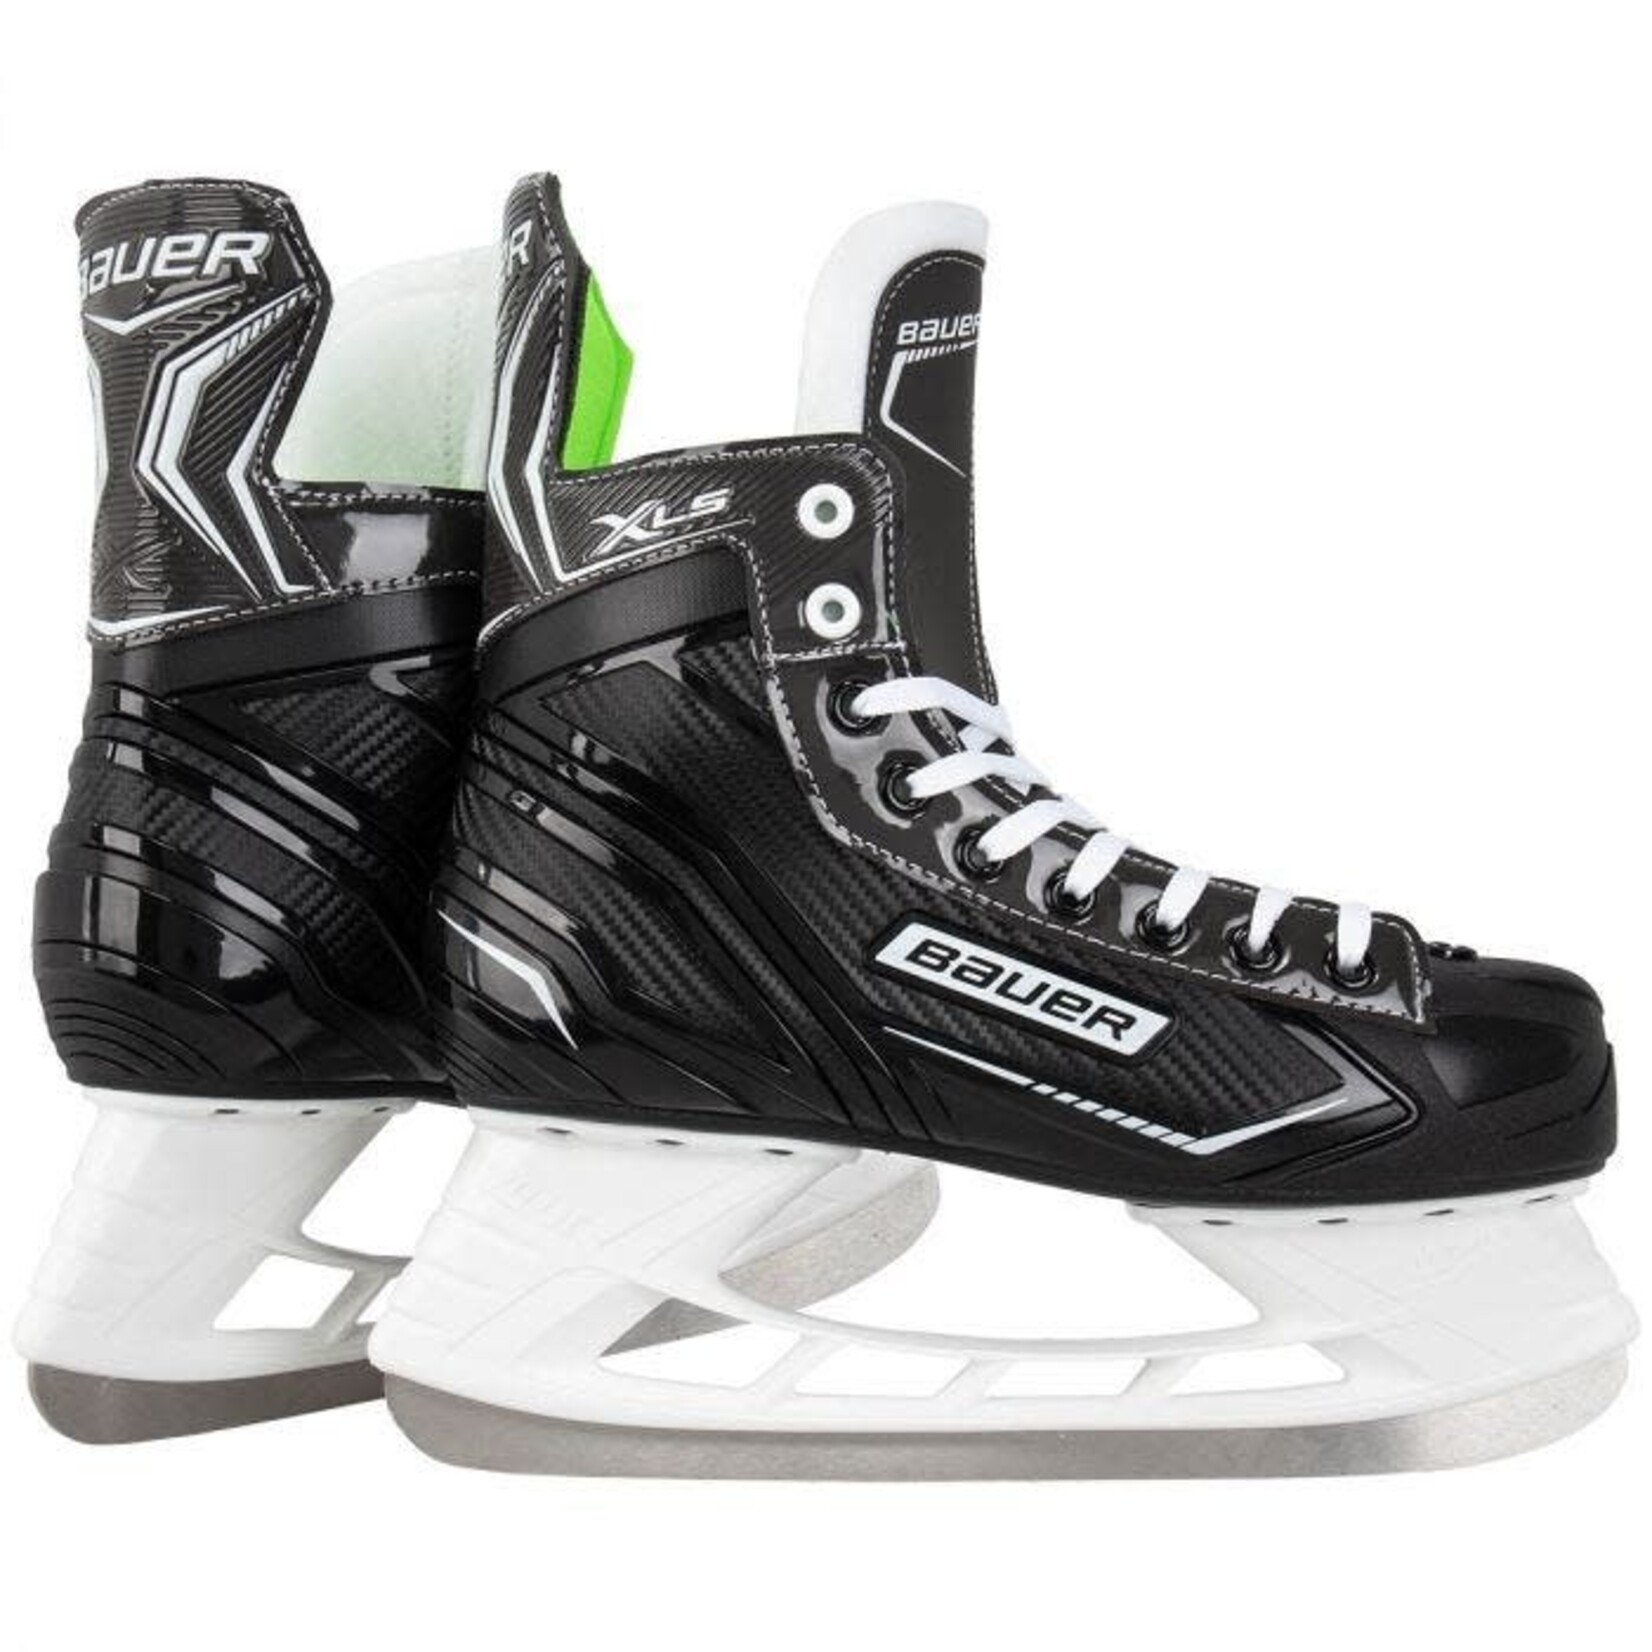 Bauer Bauer Hockey Skates, X-LS, Intermediate